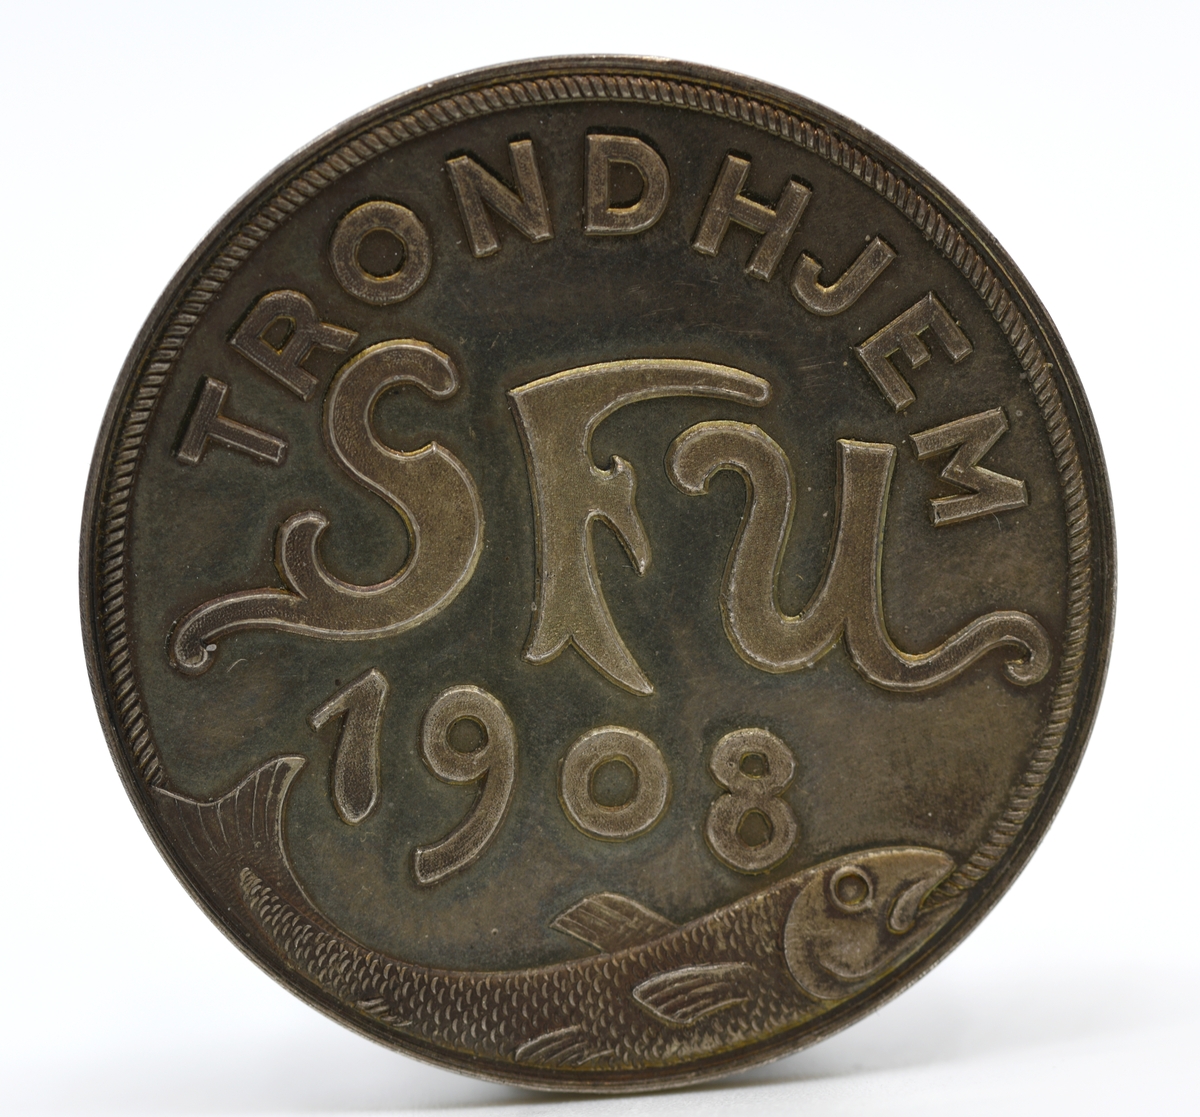 Sølv- og bronsemedalje fra Den skandinaviske fiskeriutstilling i Trondhjem 1908.